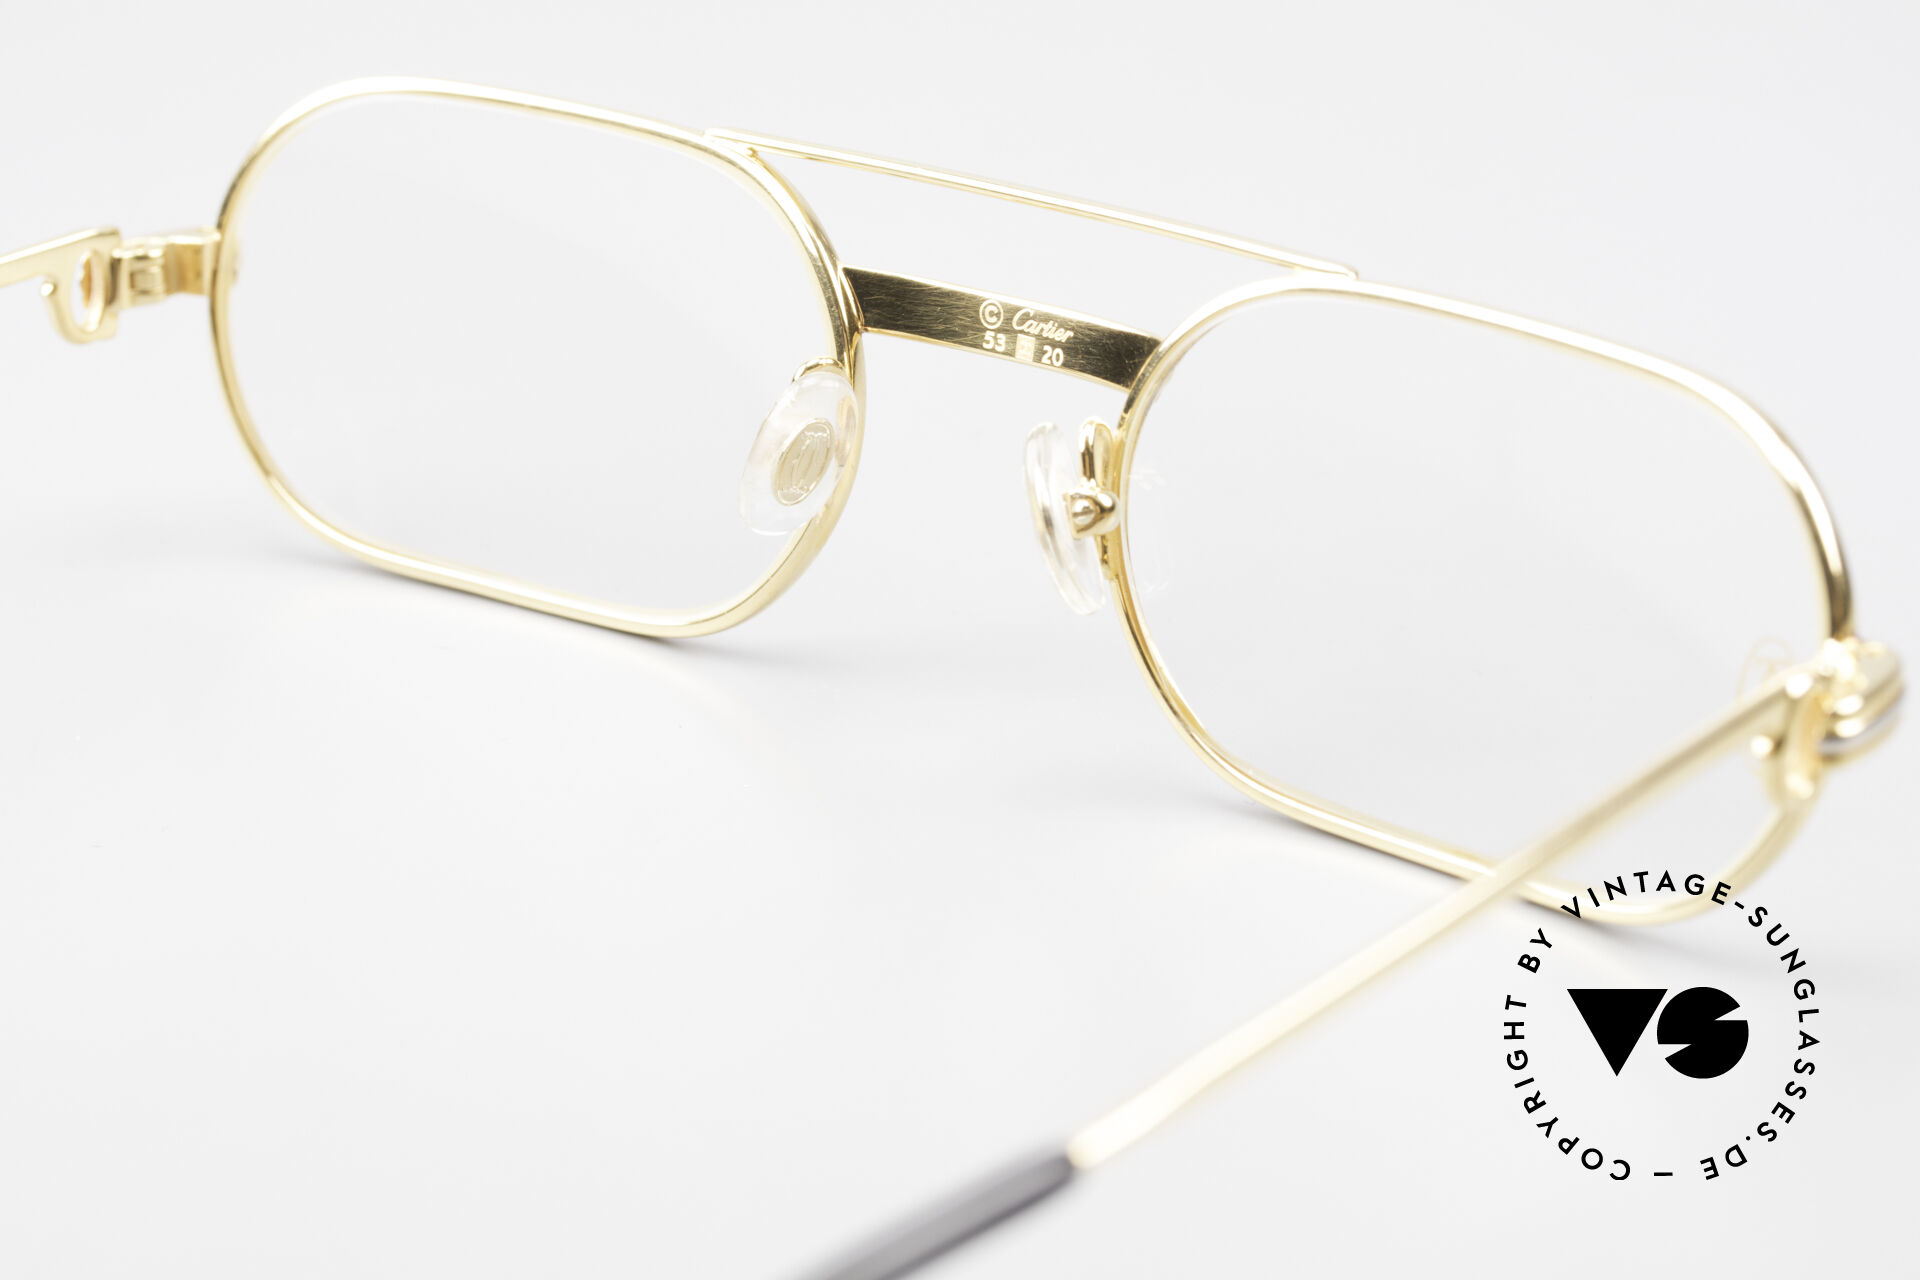 CRESP00019 - Signature C de Cartier Precious Sunglasses - Rose gold, rose  gold coated lenses - Cartier